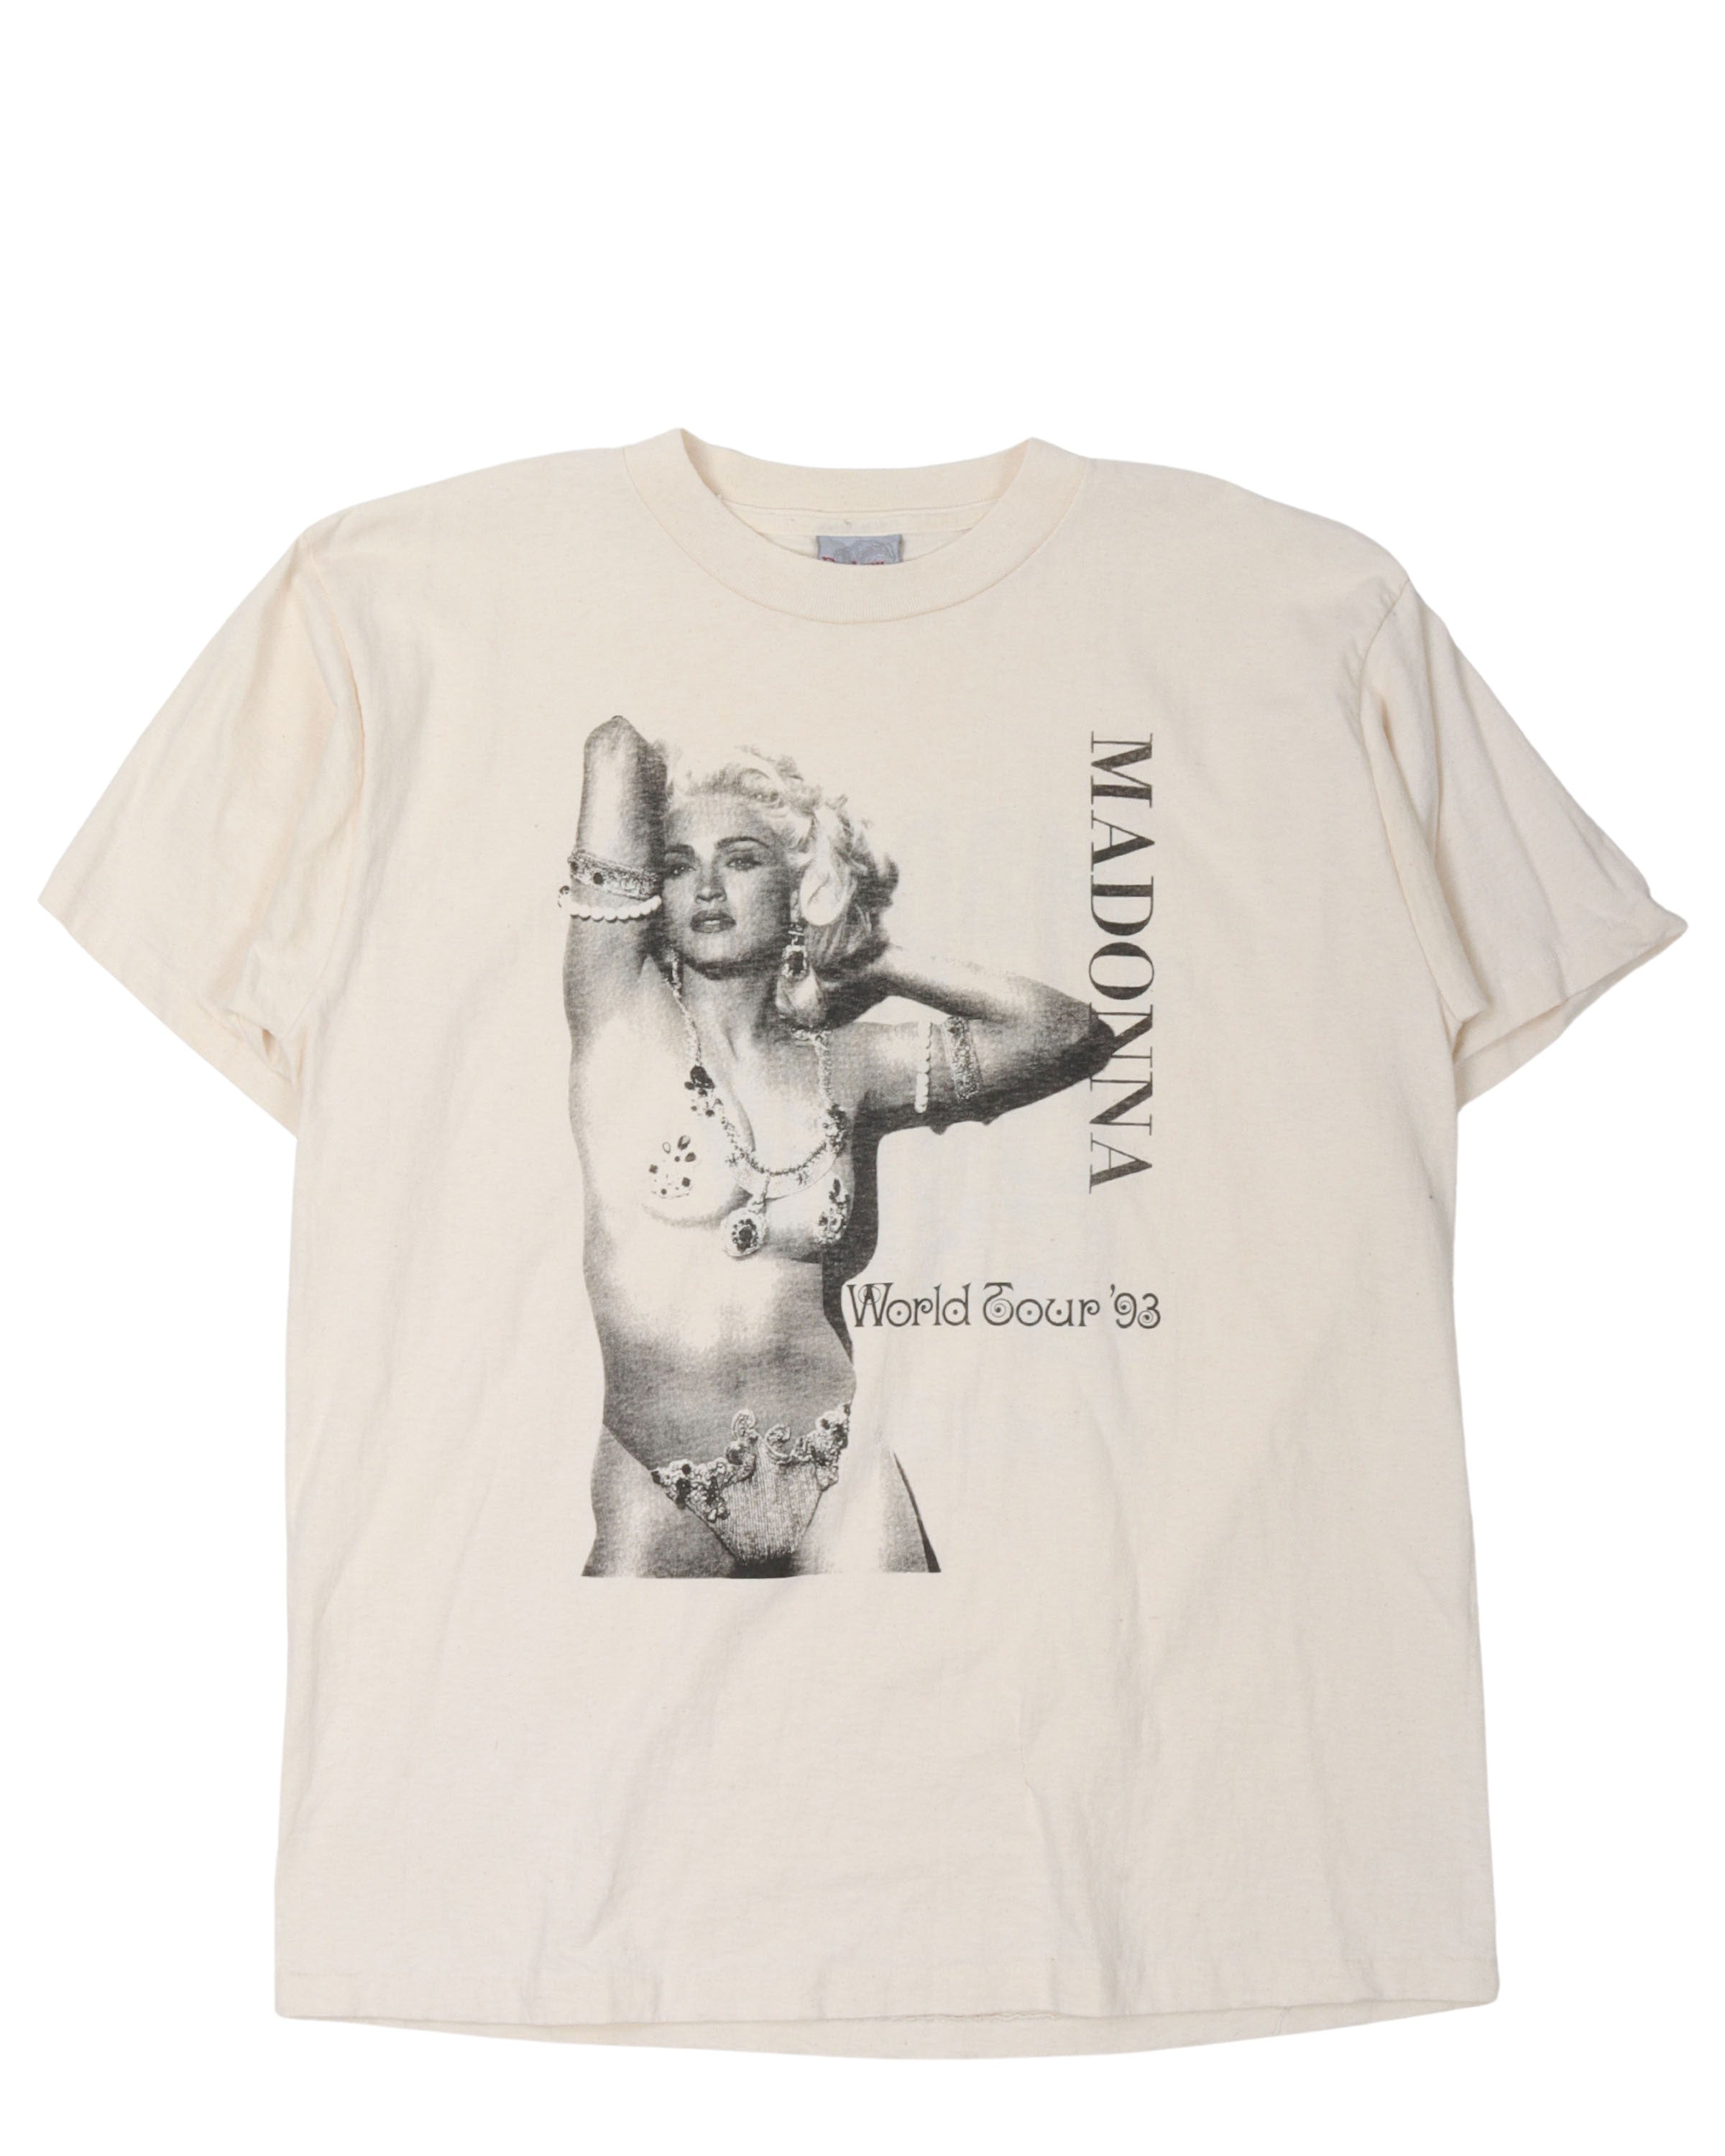 Madonna World Tour 1993 T-Shirt